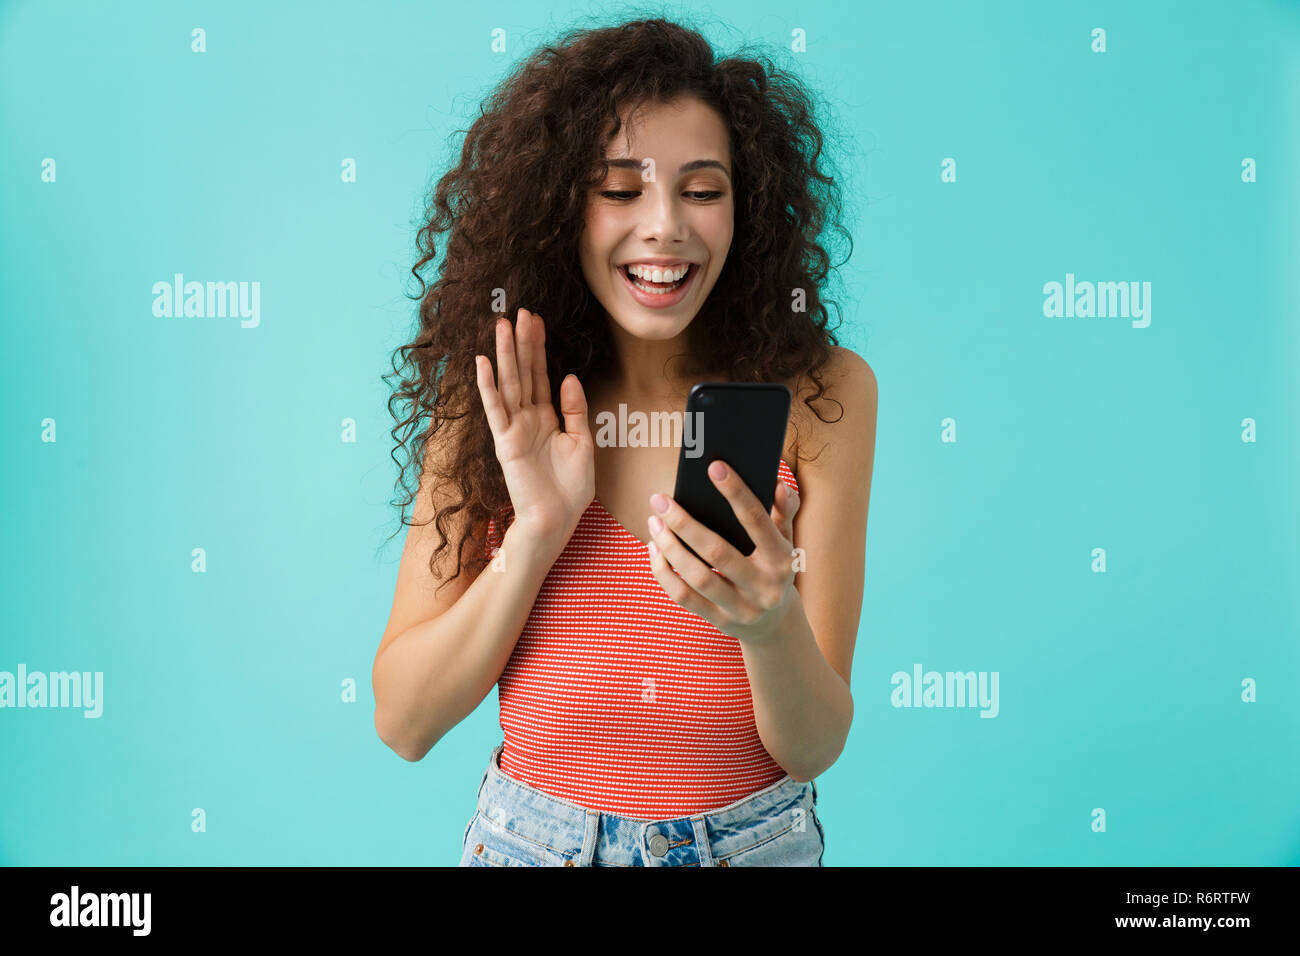 Photo de femme brune 20s avec des cheveux bouclés smiling and looking at mobile phone isolé sur fond bleu Banque D'Images